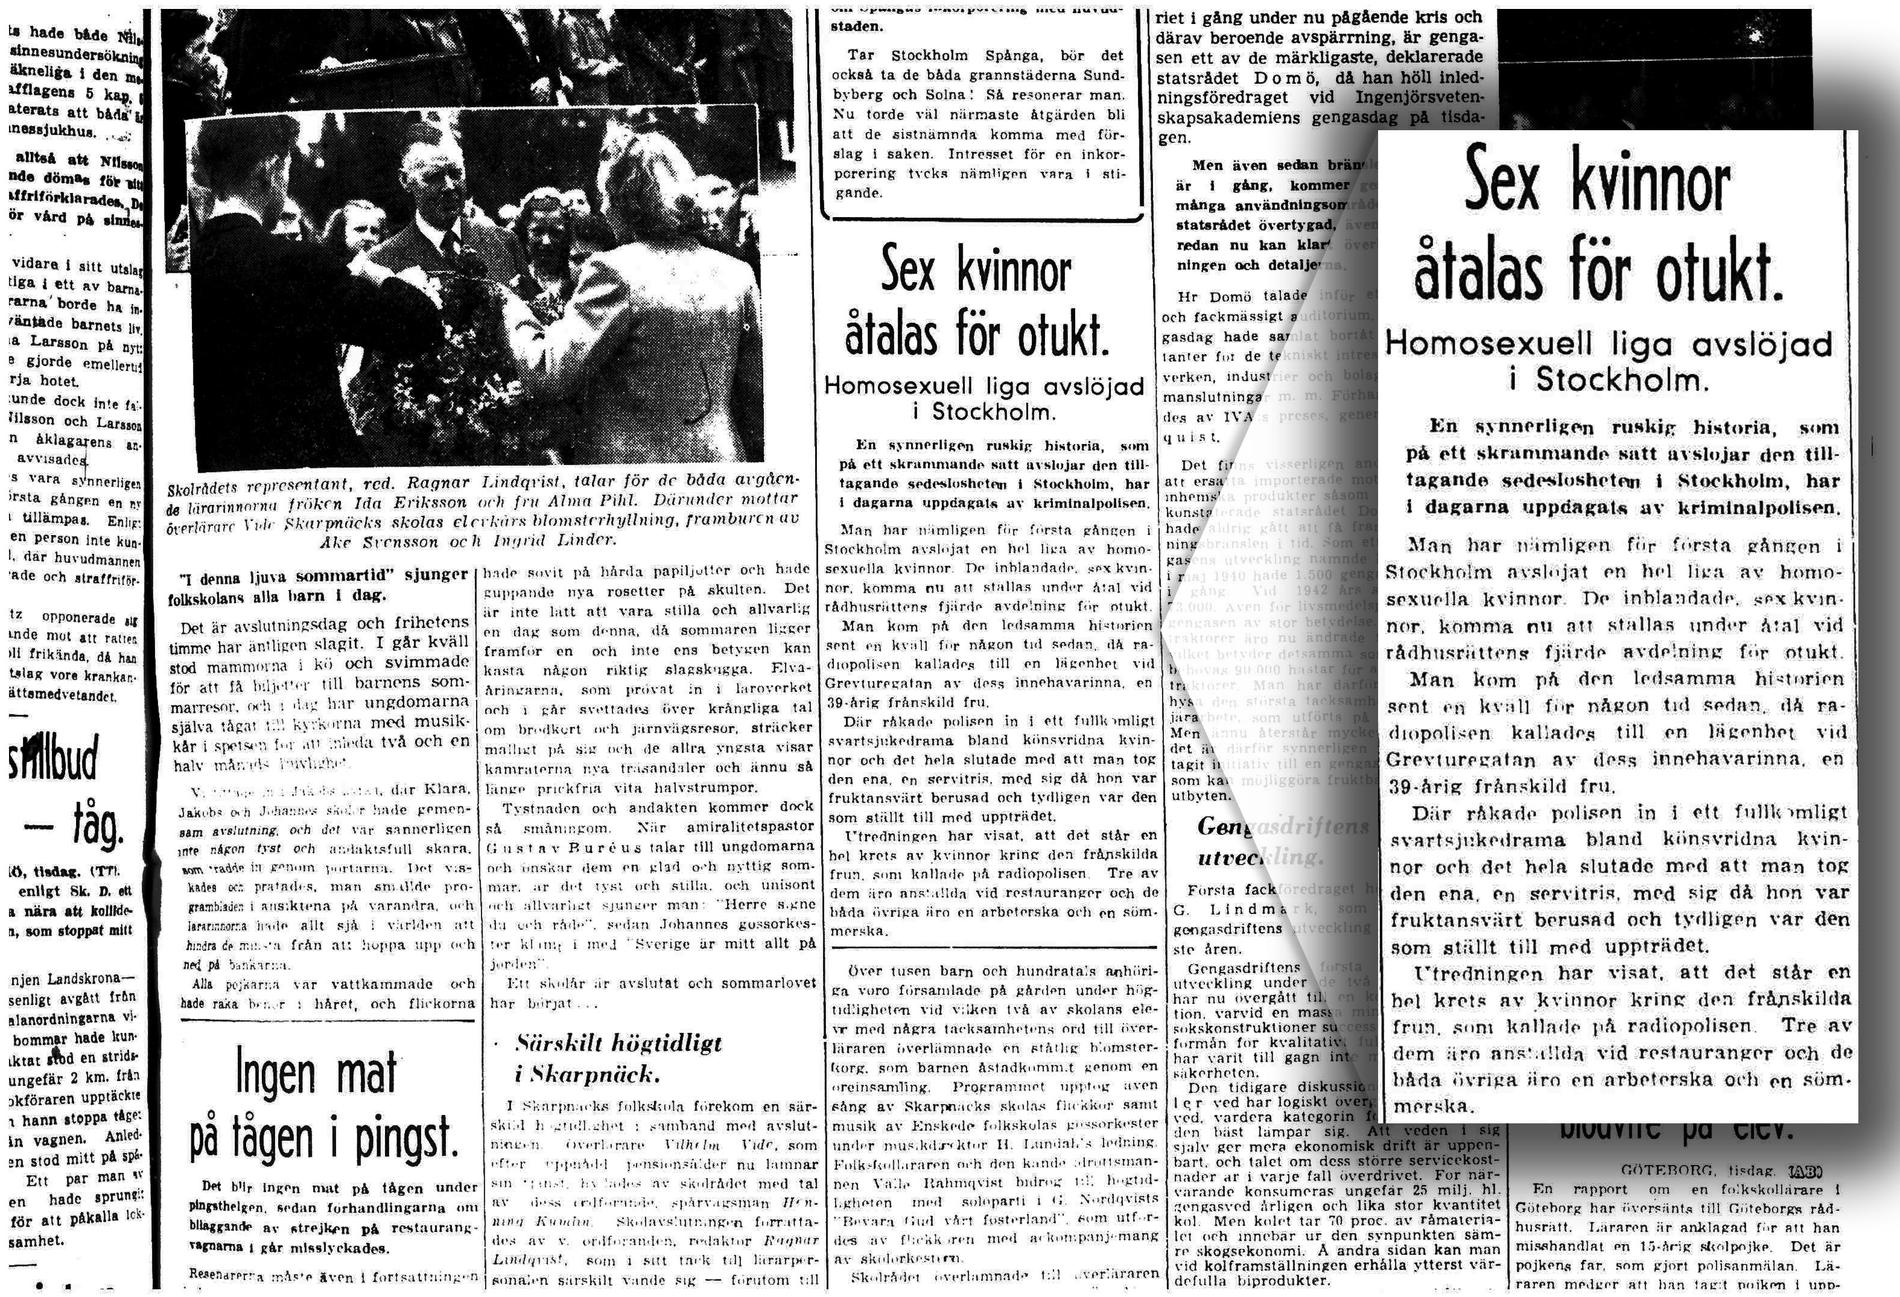 Aftonbladet 8/6 1943. ”Aftonbladet är med ganska mycket i boken på ett inte så fördelaktigt sätt. Jag visste inte det, Aftonbladet har lite på sitt samvete från krigstiden och kring detta som man kallade ’en ruskig historia’”, säger Mian Lodalen.